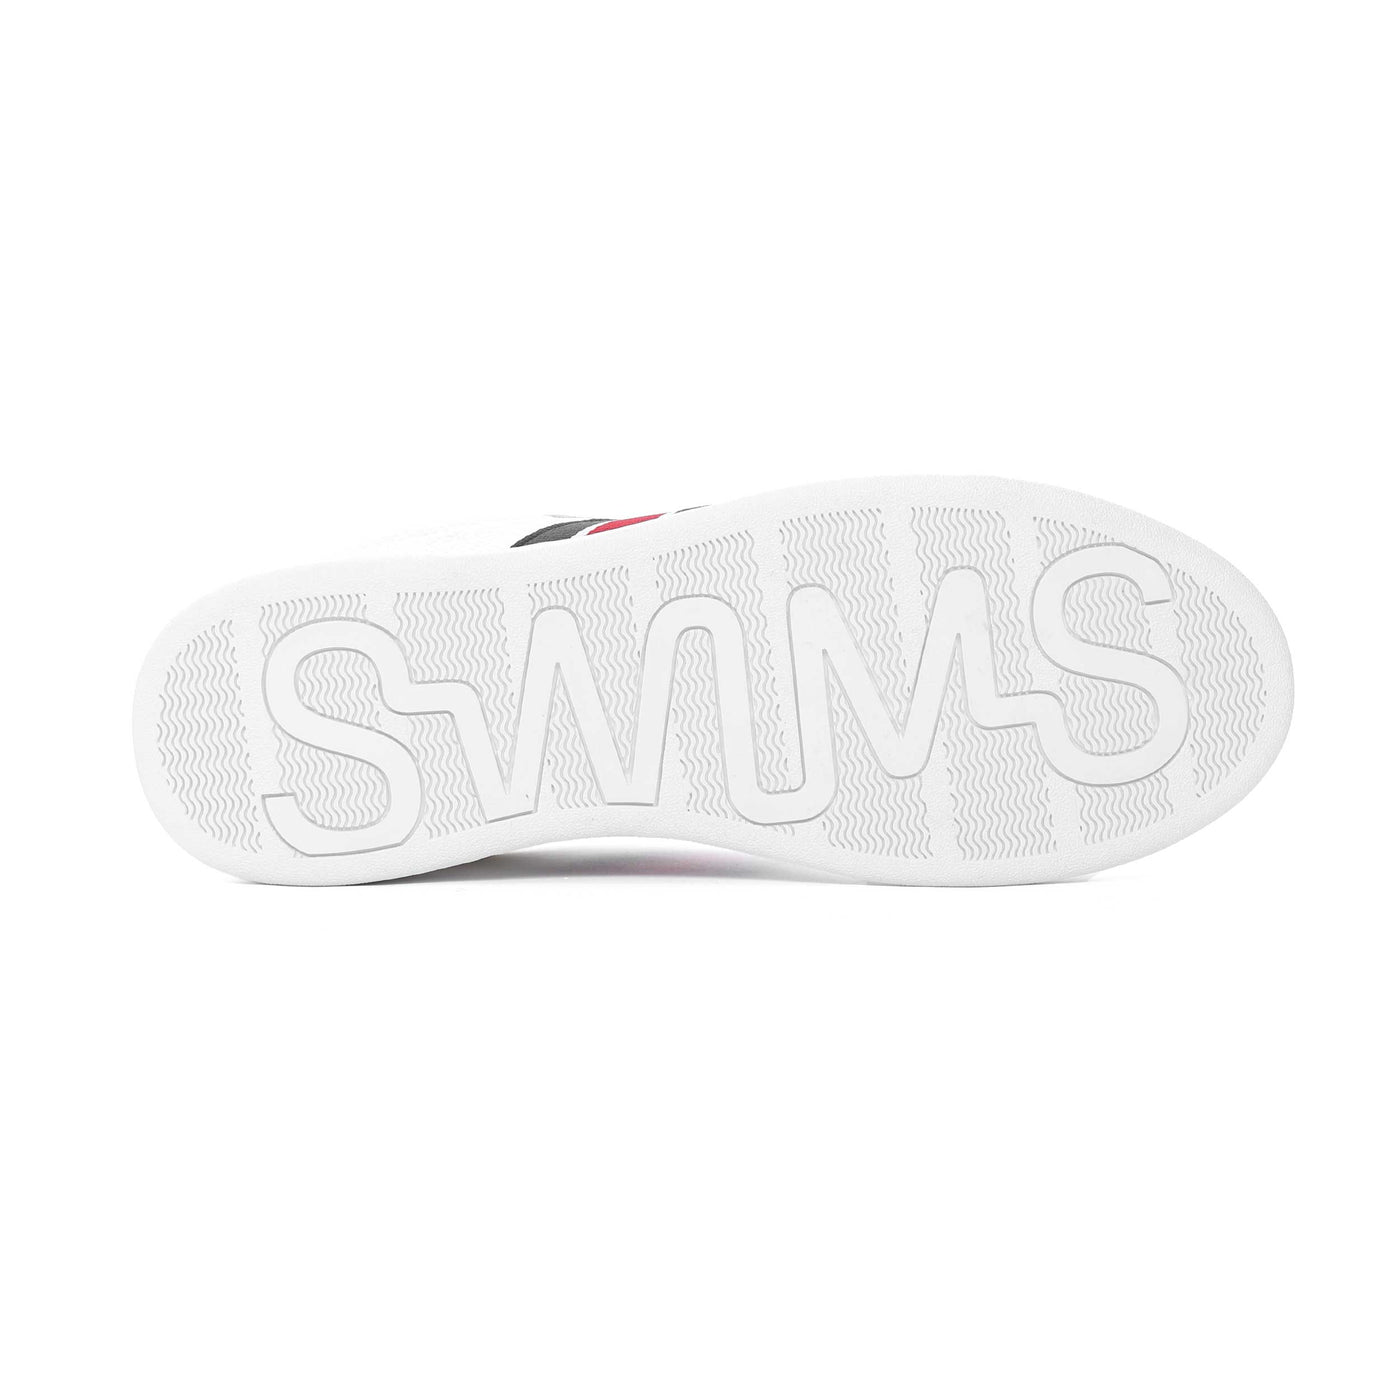 Swims Solaro Sneaker Trainer in White Sole